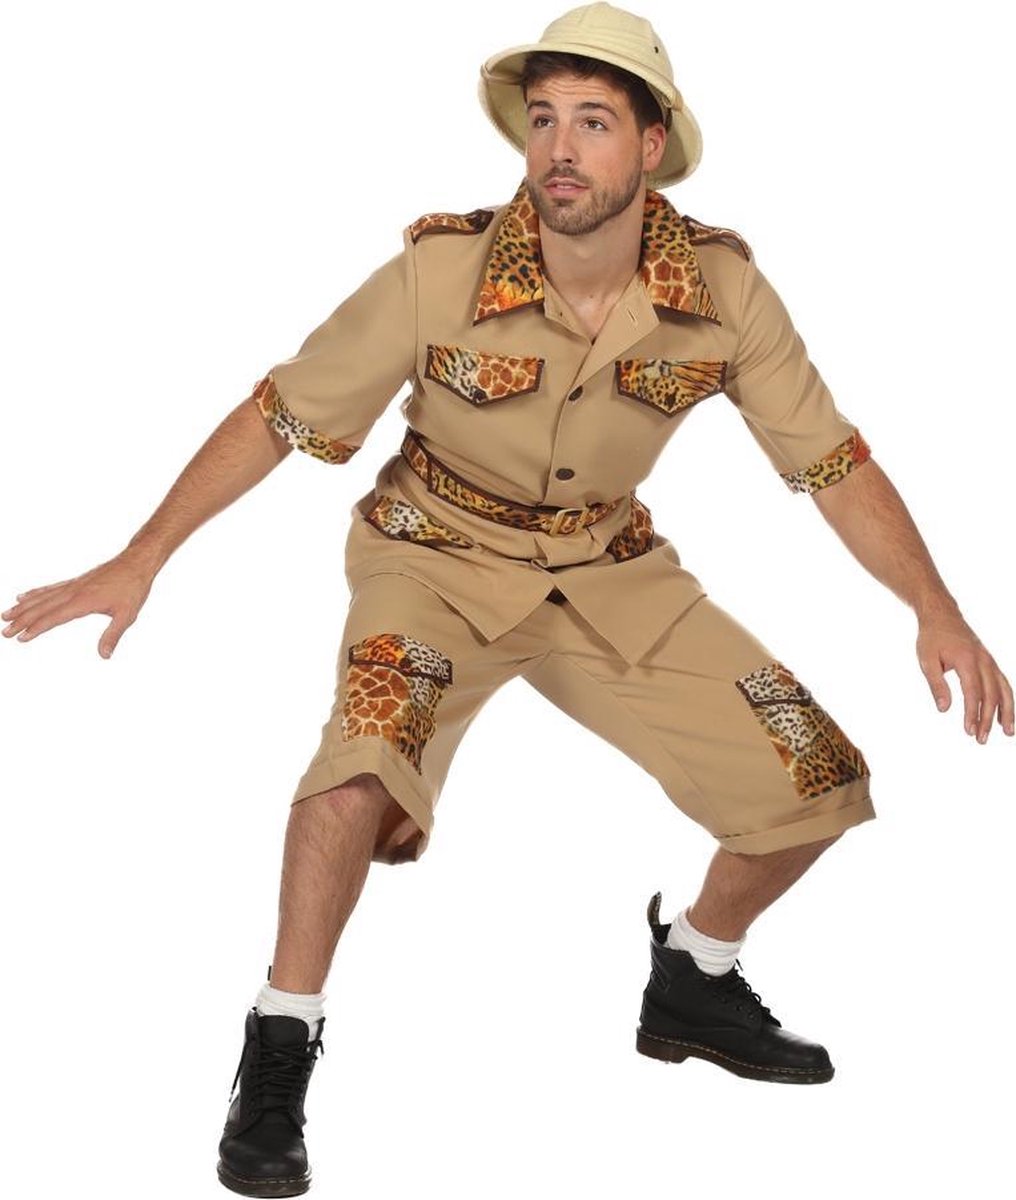 Wilbers & Wilbers - Jungle & Afrika Kostuum - De Jungle Slaapt Nooit Safari - Man - wit / beige - Maat 54 - Carnavalskleding - Verkleedkleding